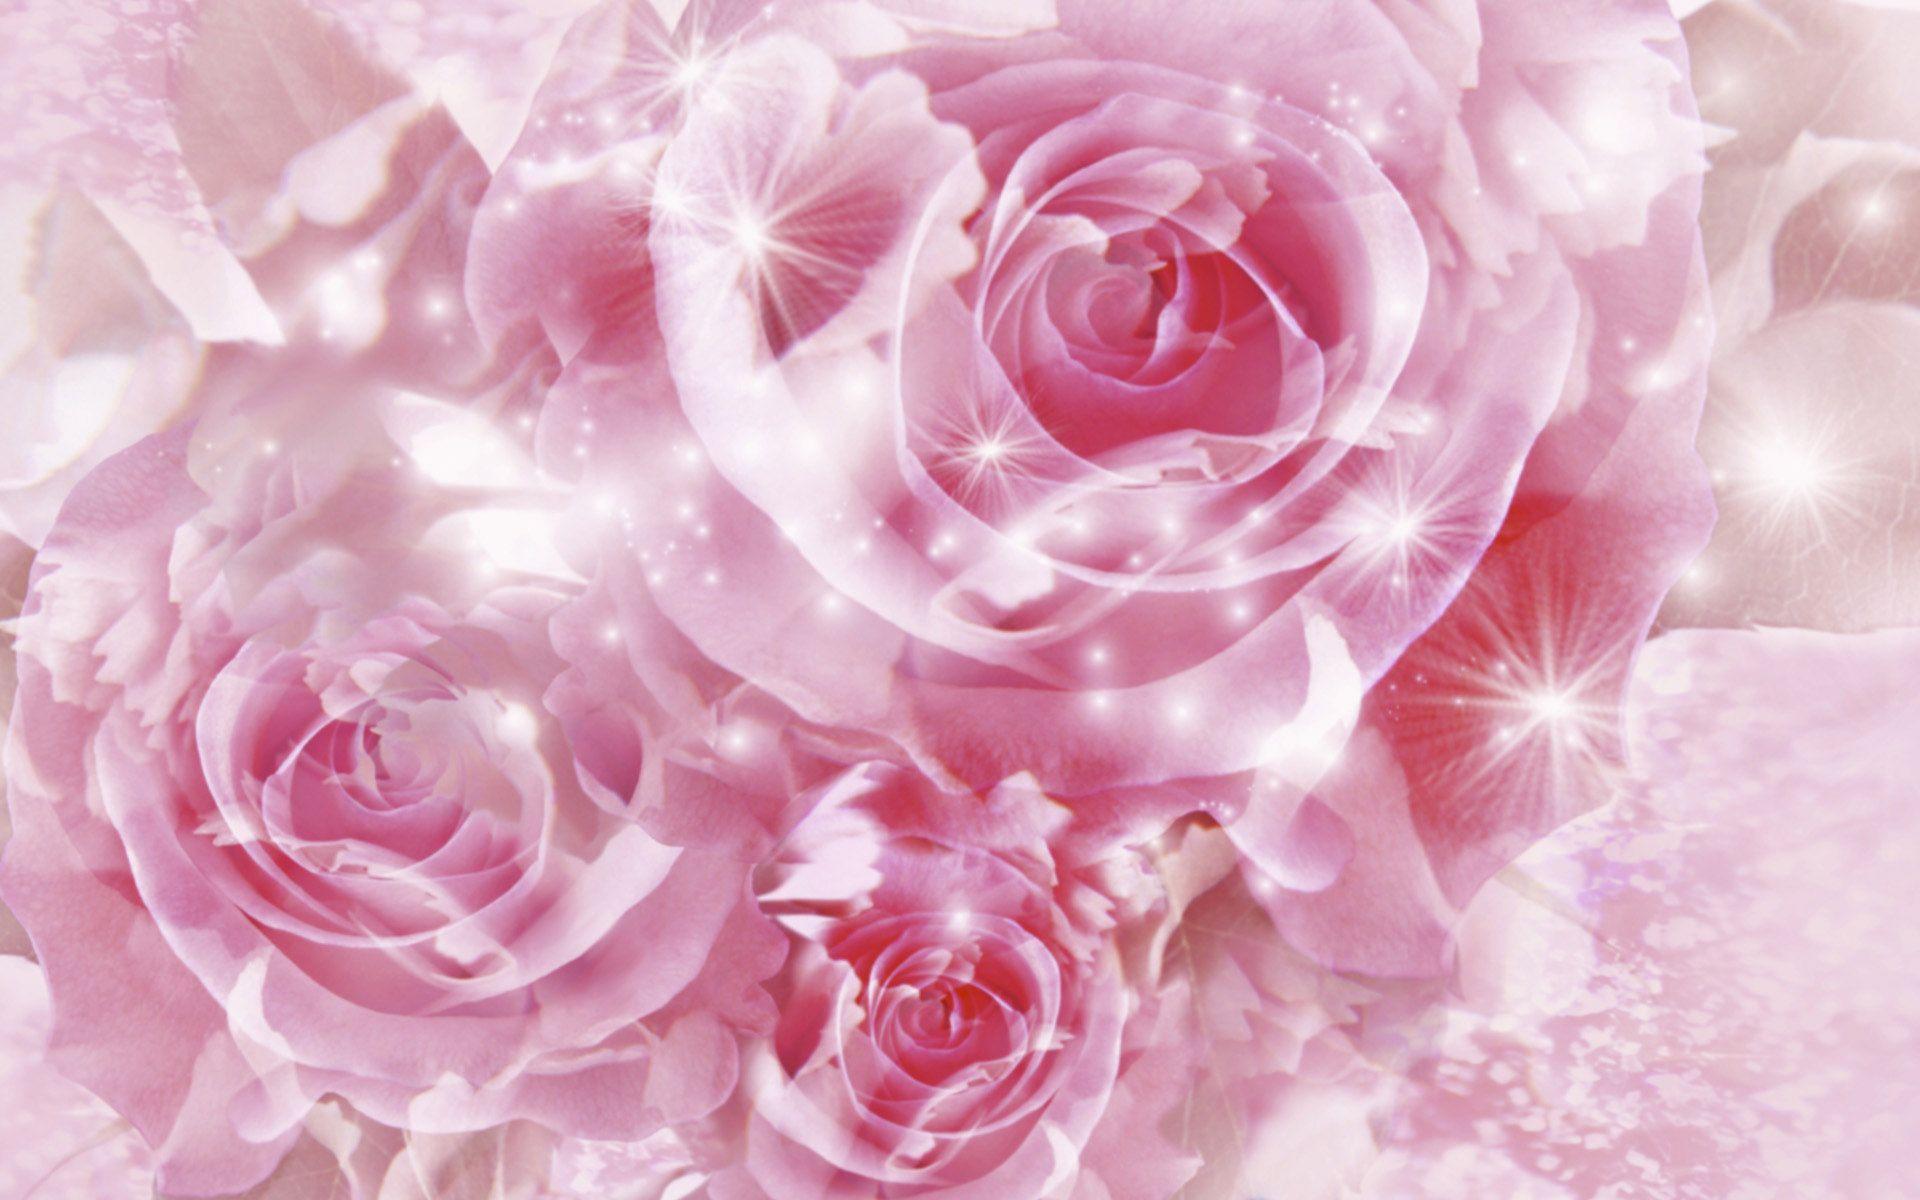 Hình nền hoa hồng cực kỳ sành điệu và tươi sáng này sẽ khiến cho màn hình của bạn trở nên nổi bật hơn. Hãy tận hưởng vẻ đẹp của những bông hoa hồng đầy màu sắc này và thư giãn sau một ngày dài làm việc.